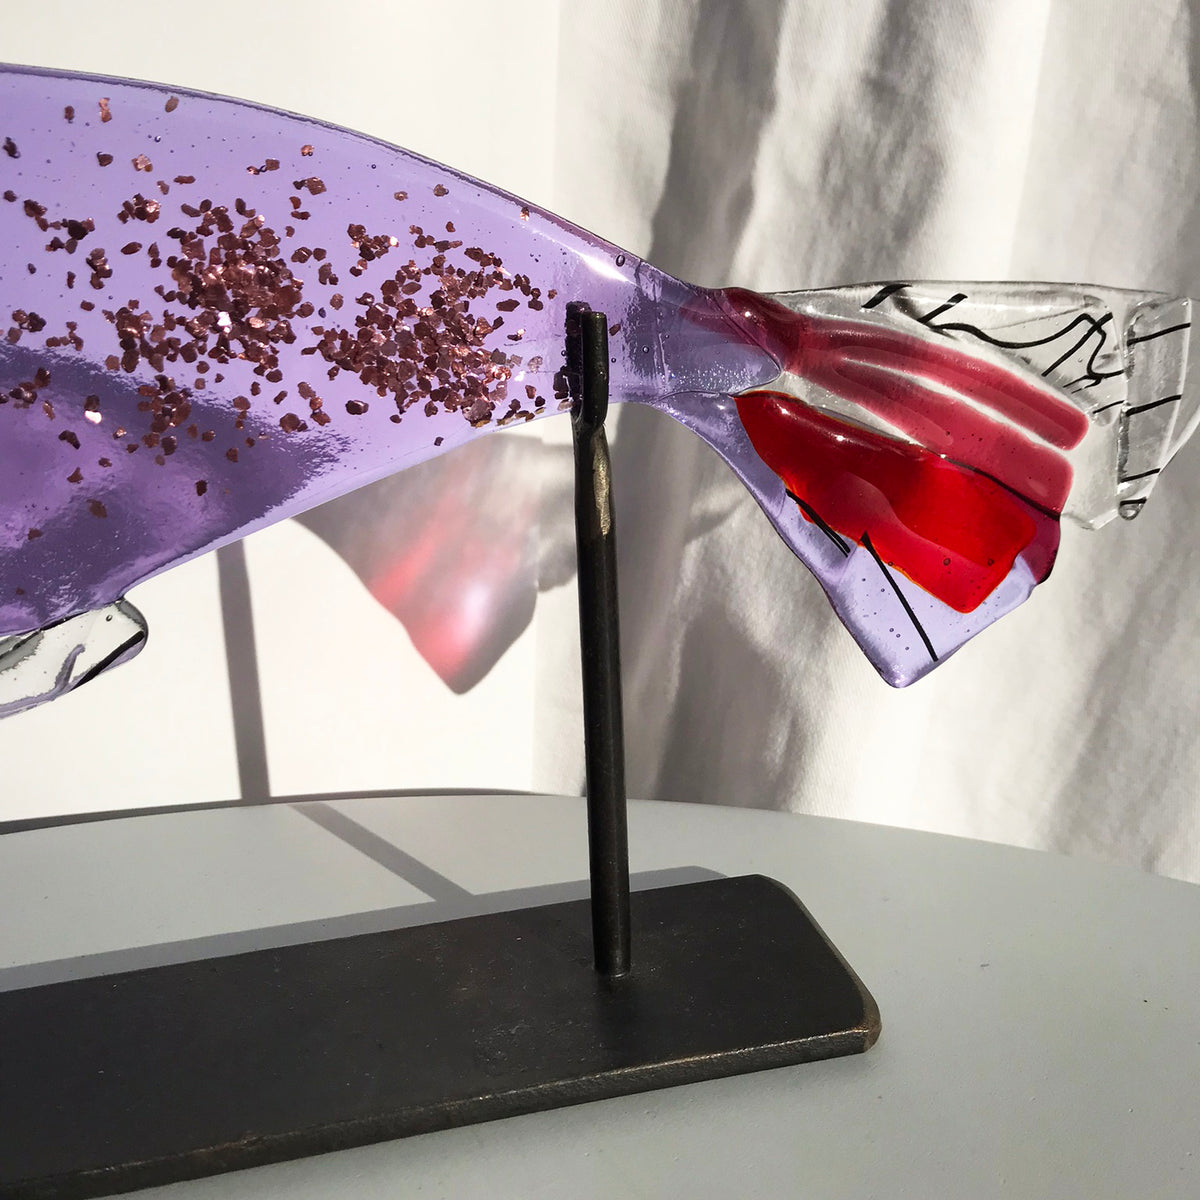 Glass Fish on Metal Stand - Mauve